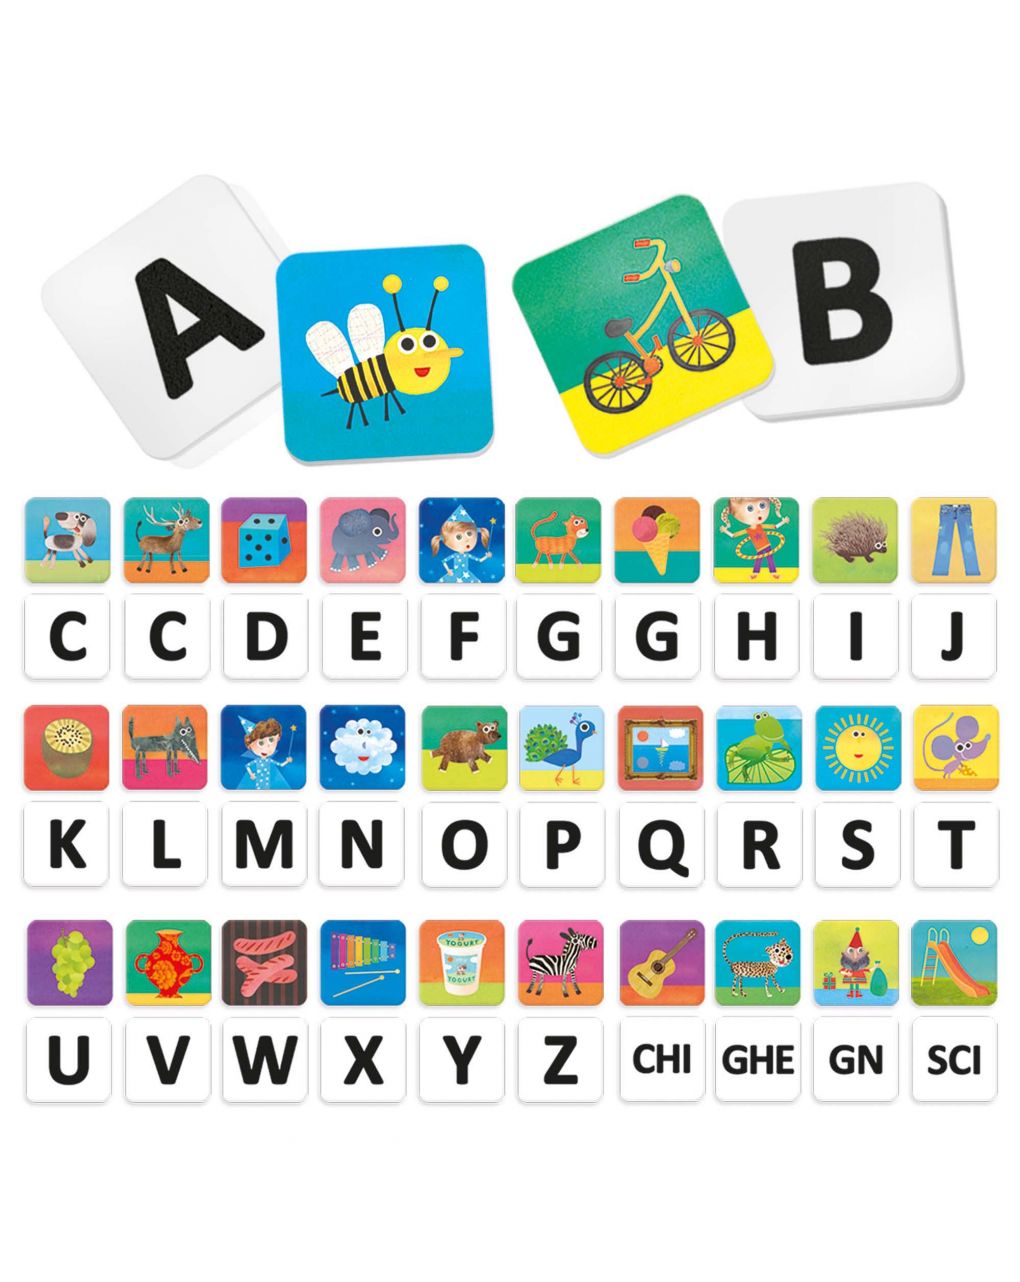 Sons e cartas para crianças em método montessori. o jogo que prepara as crianças para ler e escrever 2/4 anos - headu - Headu